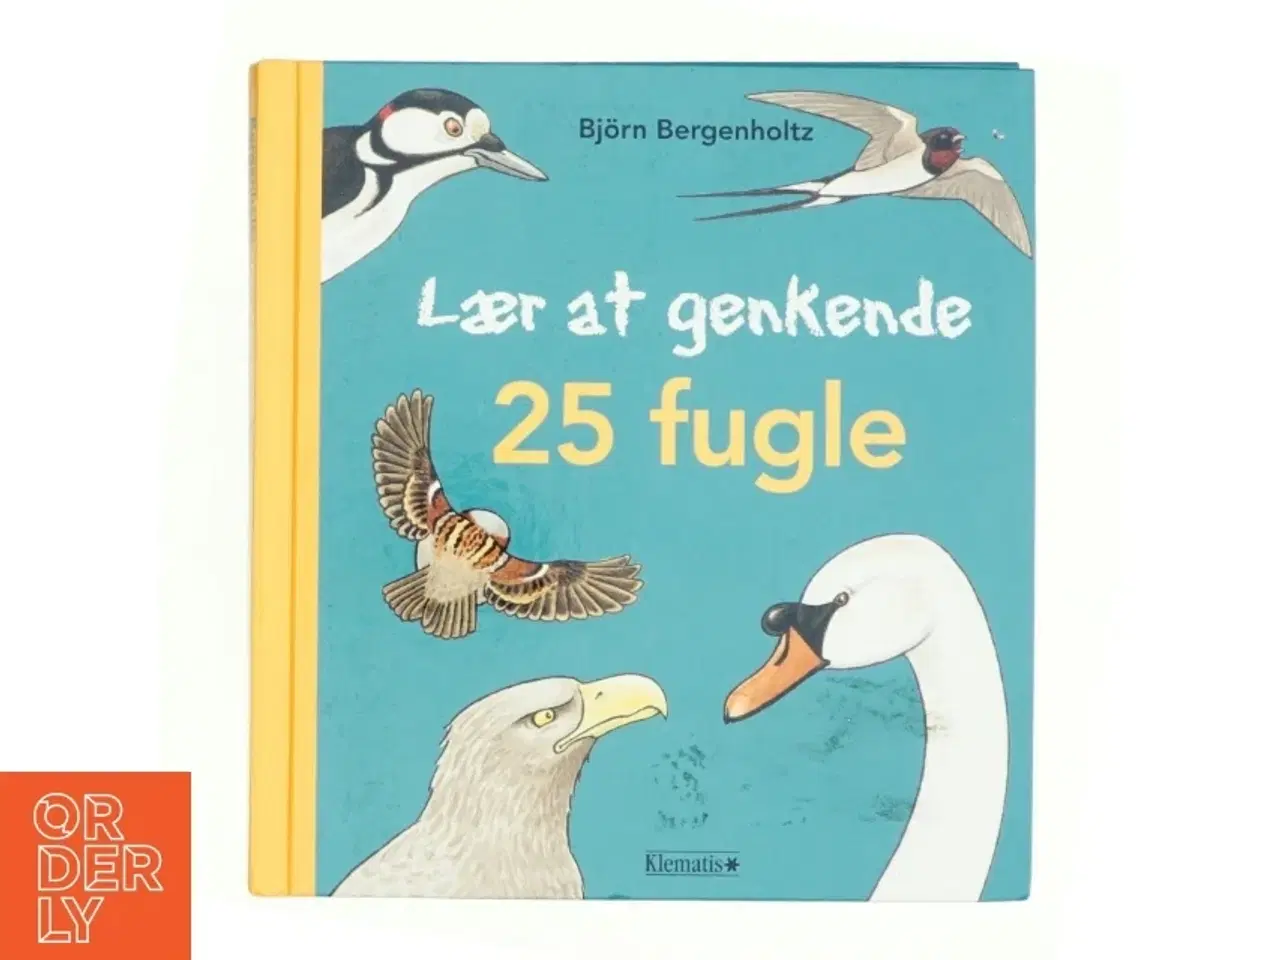 Billede 1 - Lær at genkende 25 fugle af Björn Bergenholtz